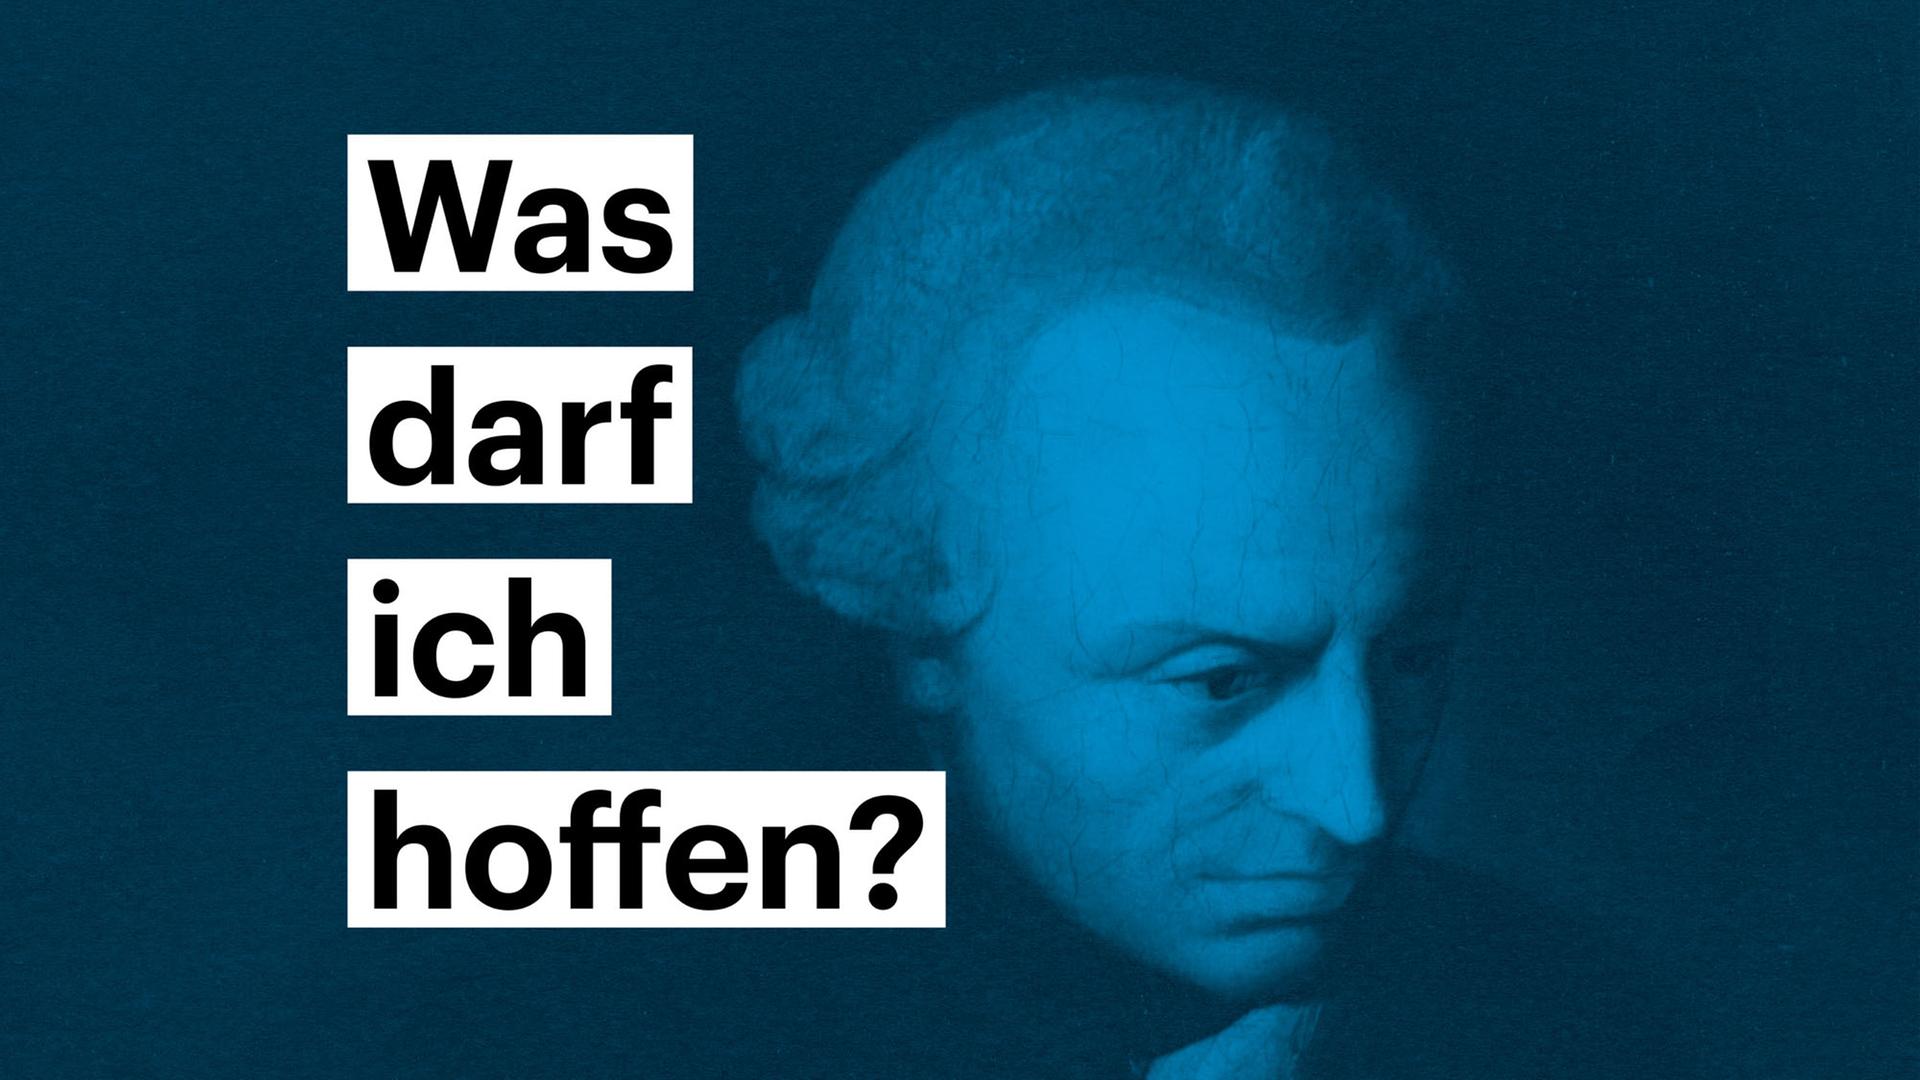 Portrait von Immanuel Kant - darauf steht die Frage "Was darf ich hoffen"